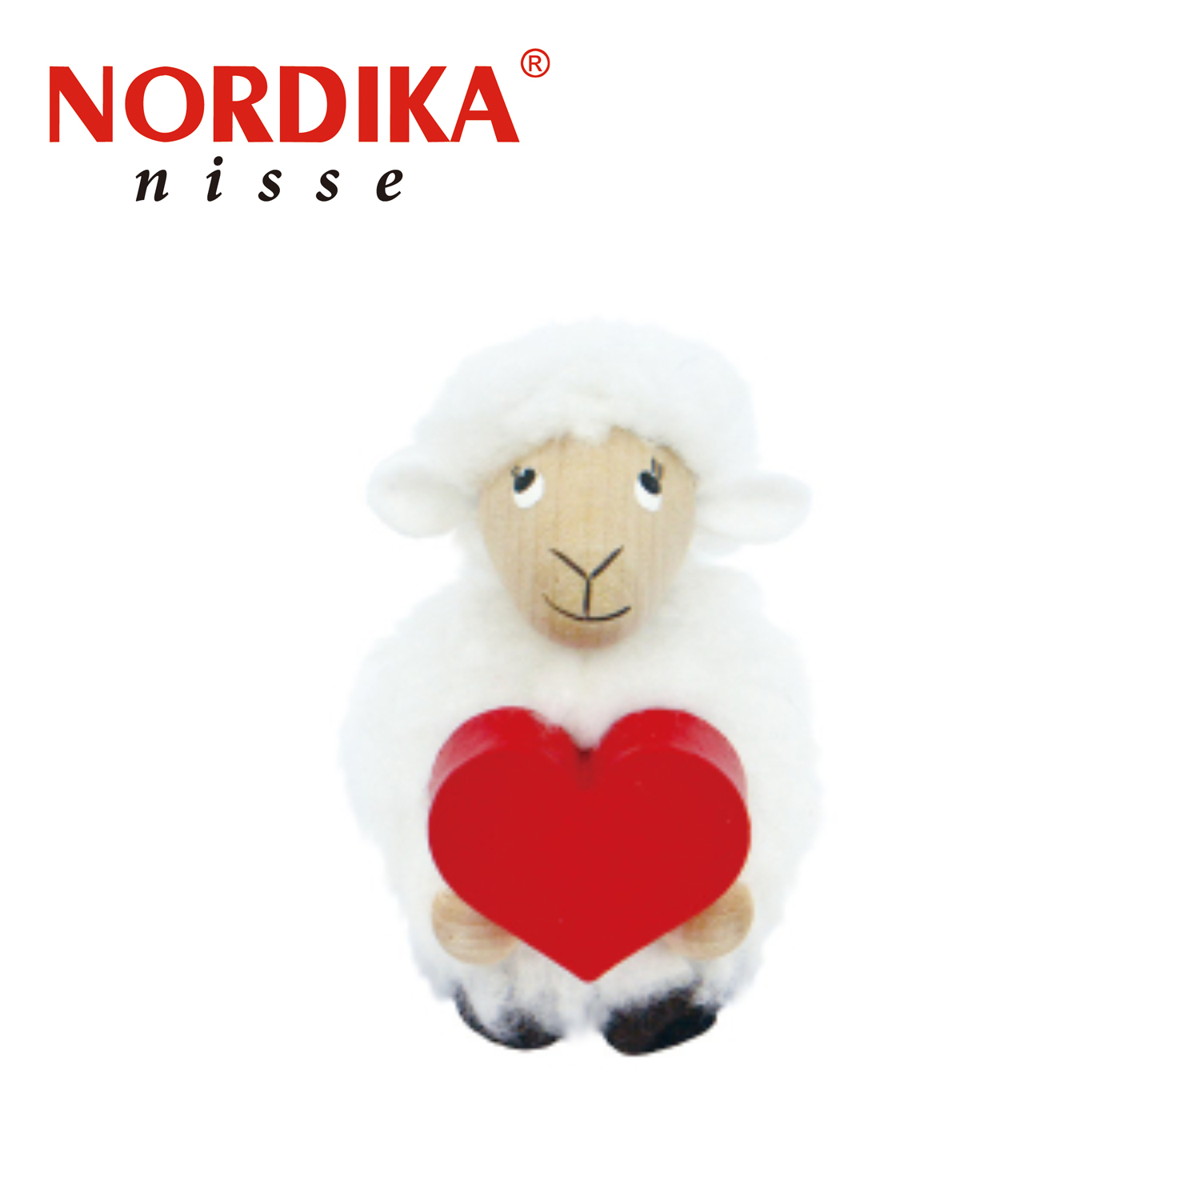 NORDIKA Nisse ノルディカ ニッセ クリスマス 木製人形 ハートを抱えた羊 NRD120718